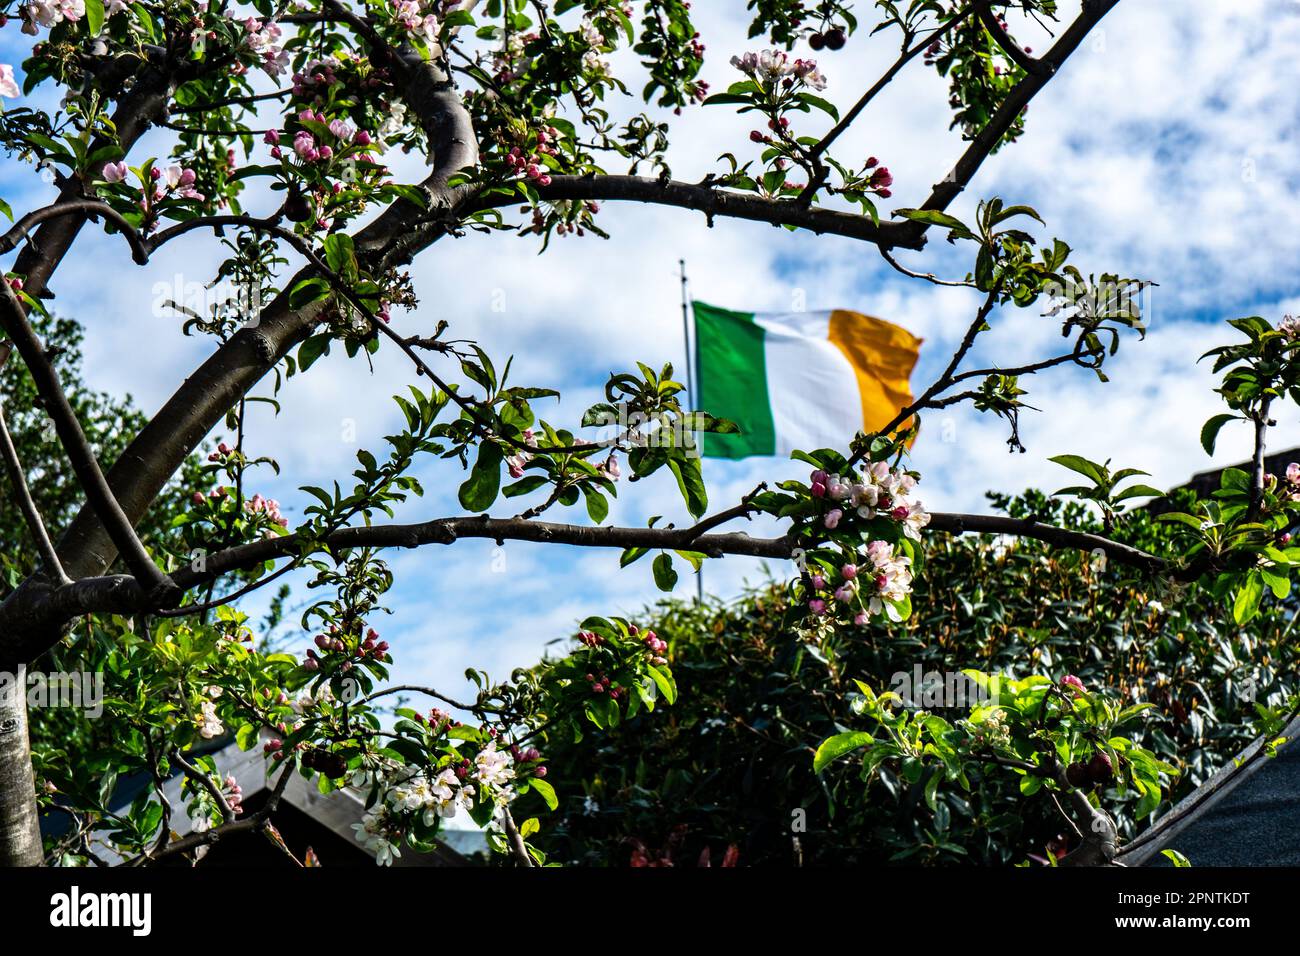 Die irische Dreifarbige Flagge sah die Frühlingsblumen von Malus Evereste, dem Krabbenapfelbaum. Stockfoto